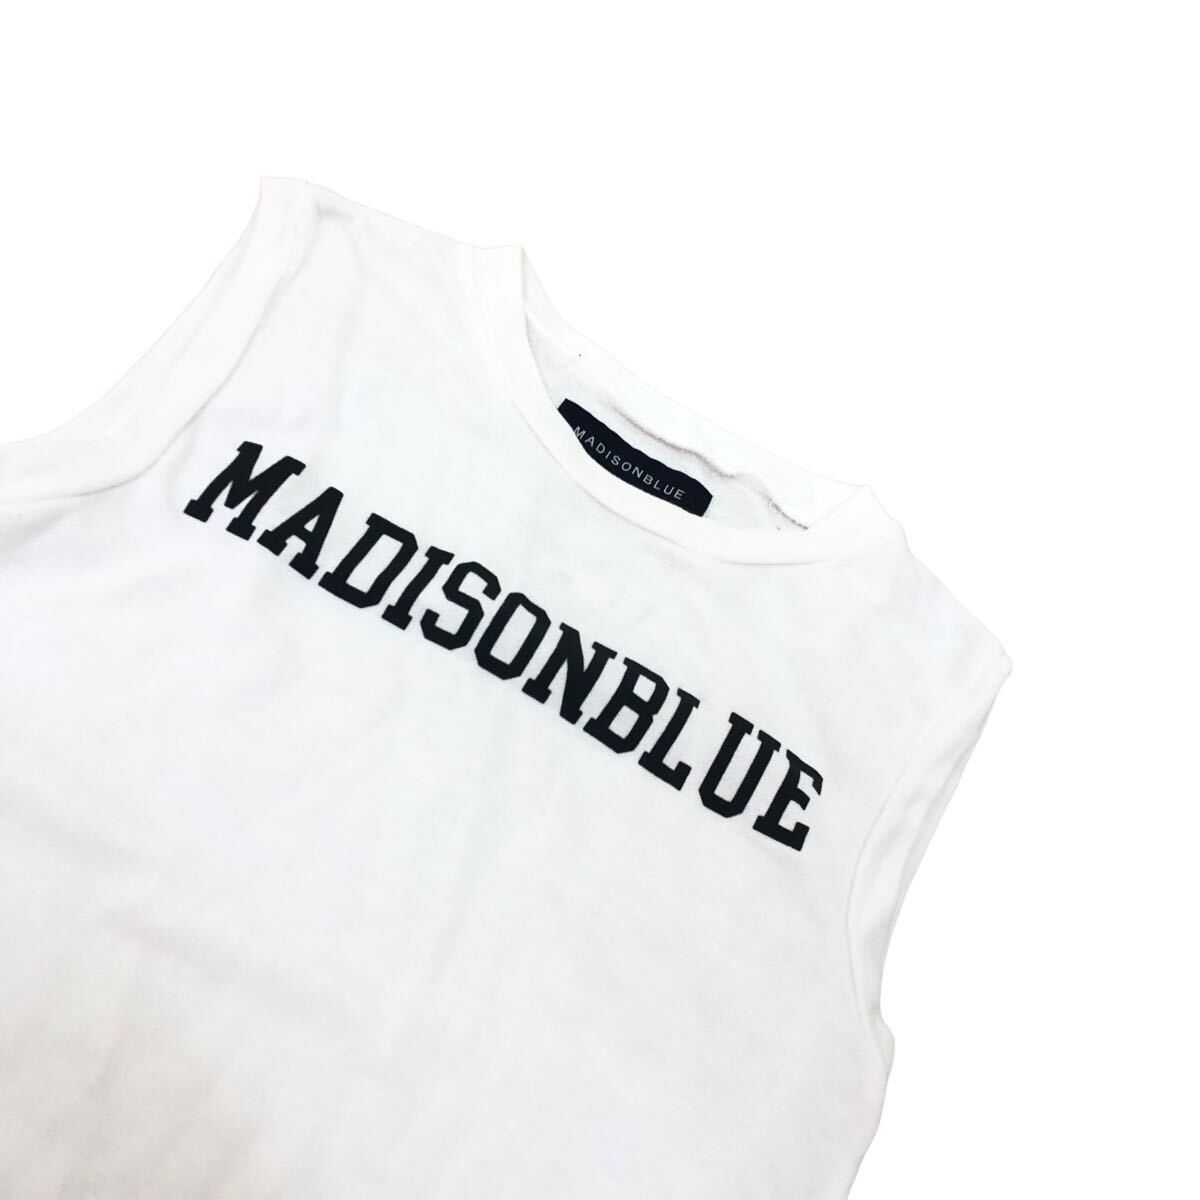 S206⑦ сделано в Японии MADISONBLUE Madison голубой майка безрукавка tops tops хлопок 100% Logo tops женский белый 